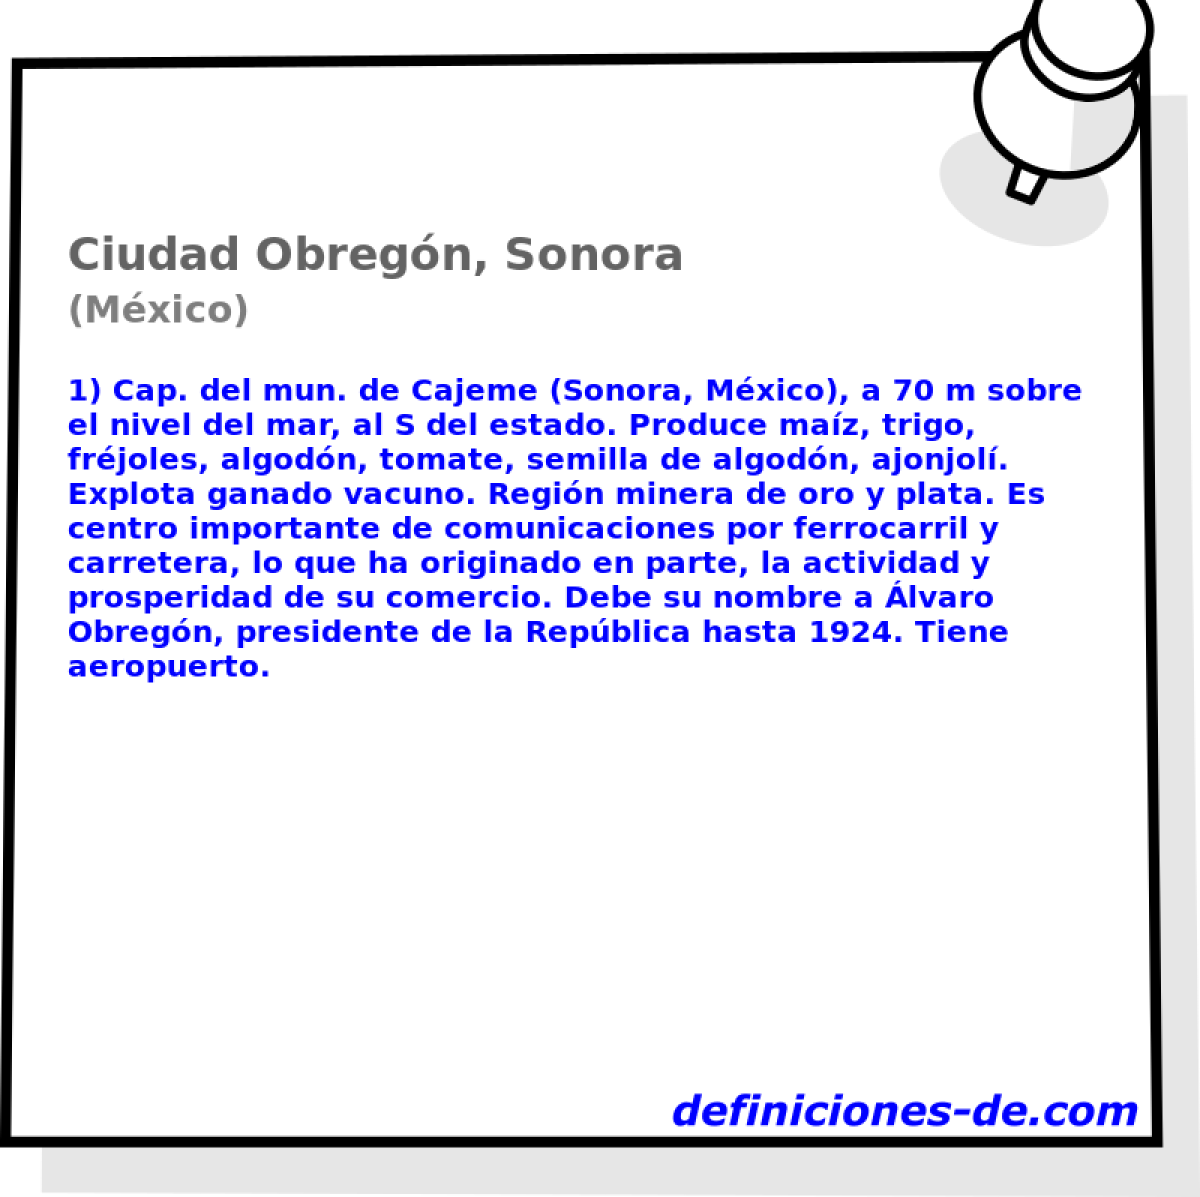 Ciudad Obregn, Sonora (Mxico)